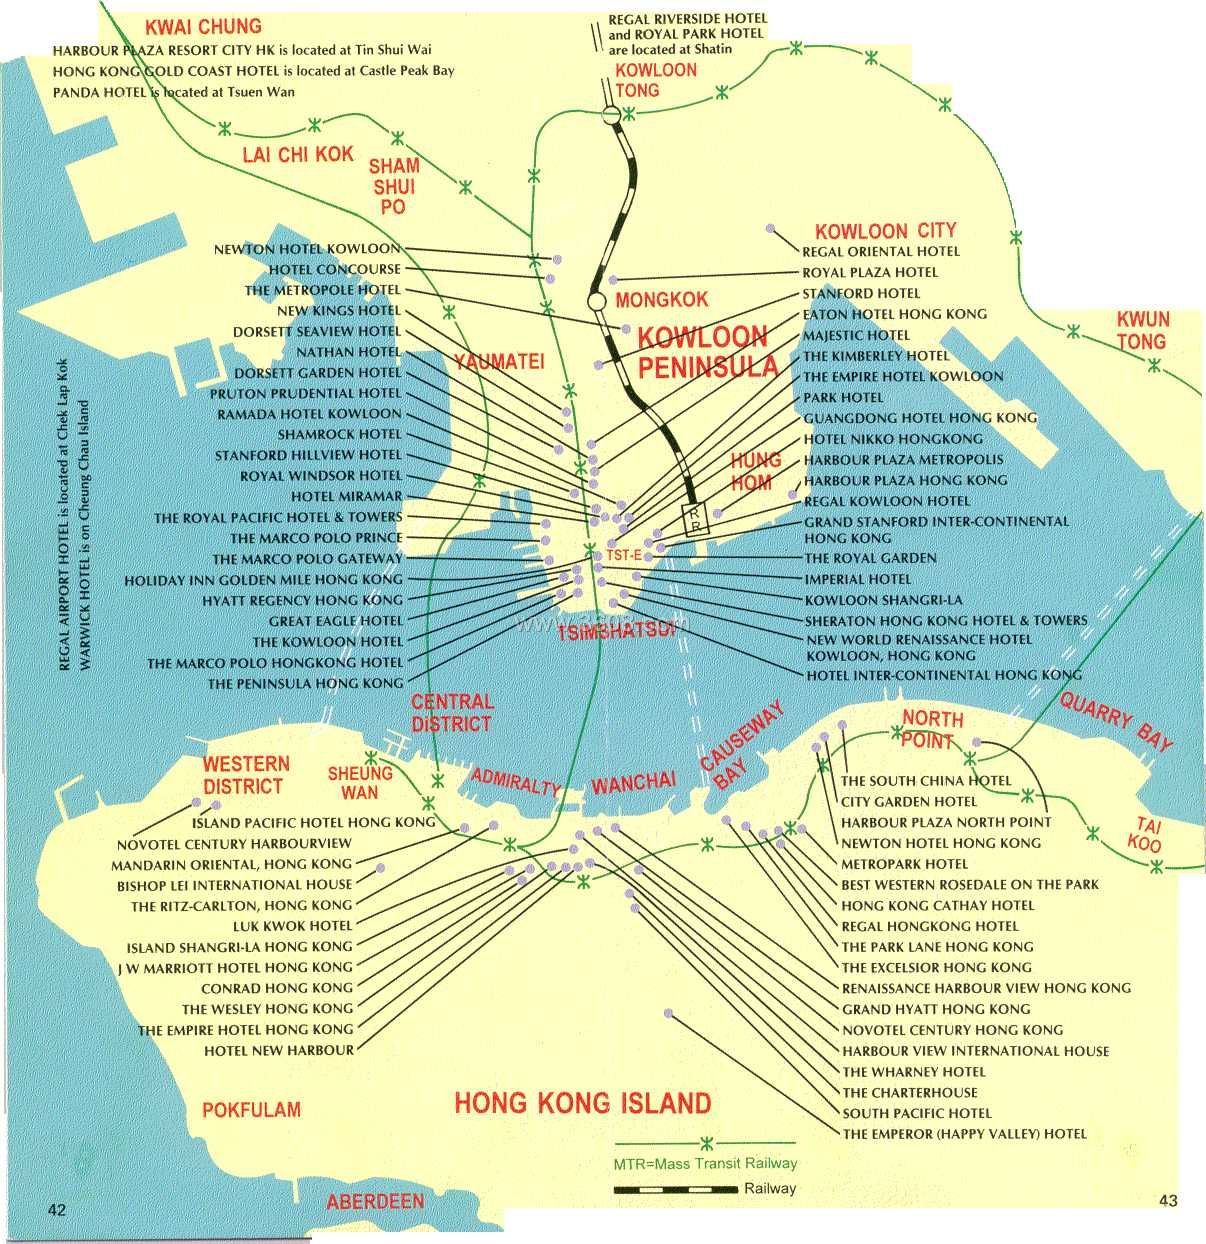 香港酒店分布图(英文) 旅游地图_香港旅游景点